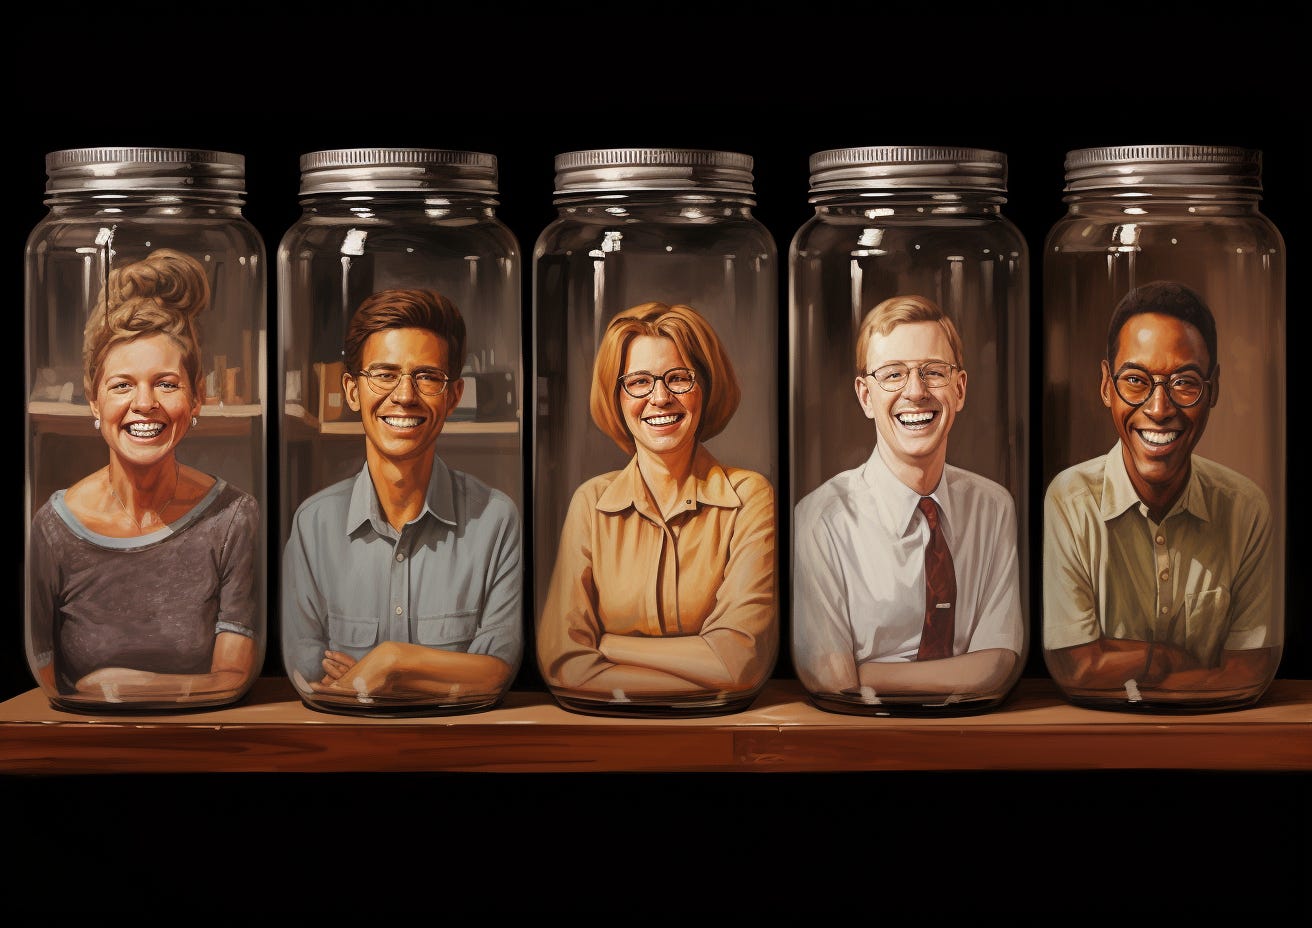 Smiling people in jars